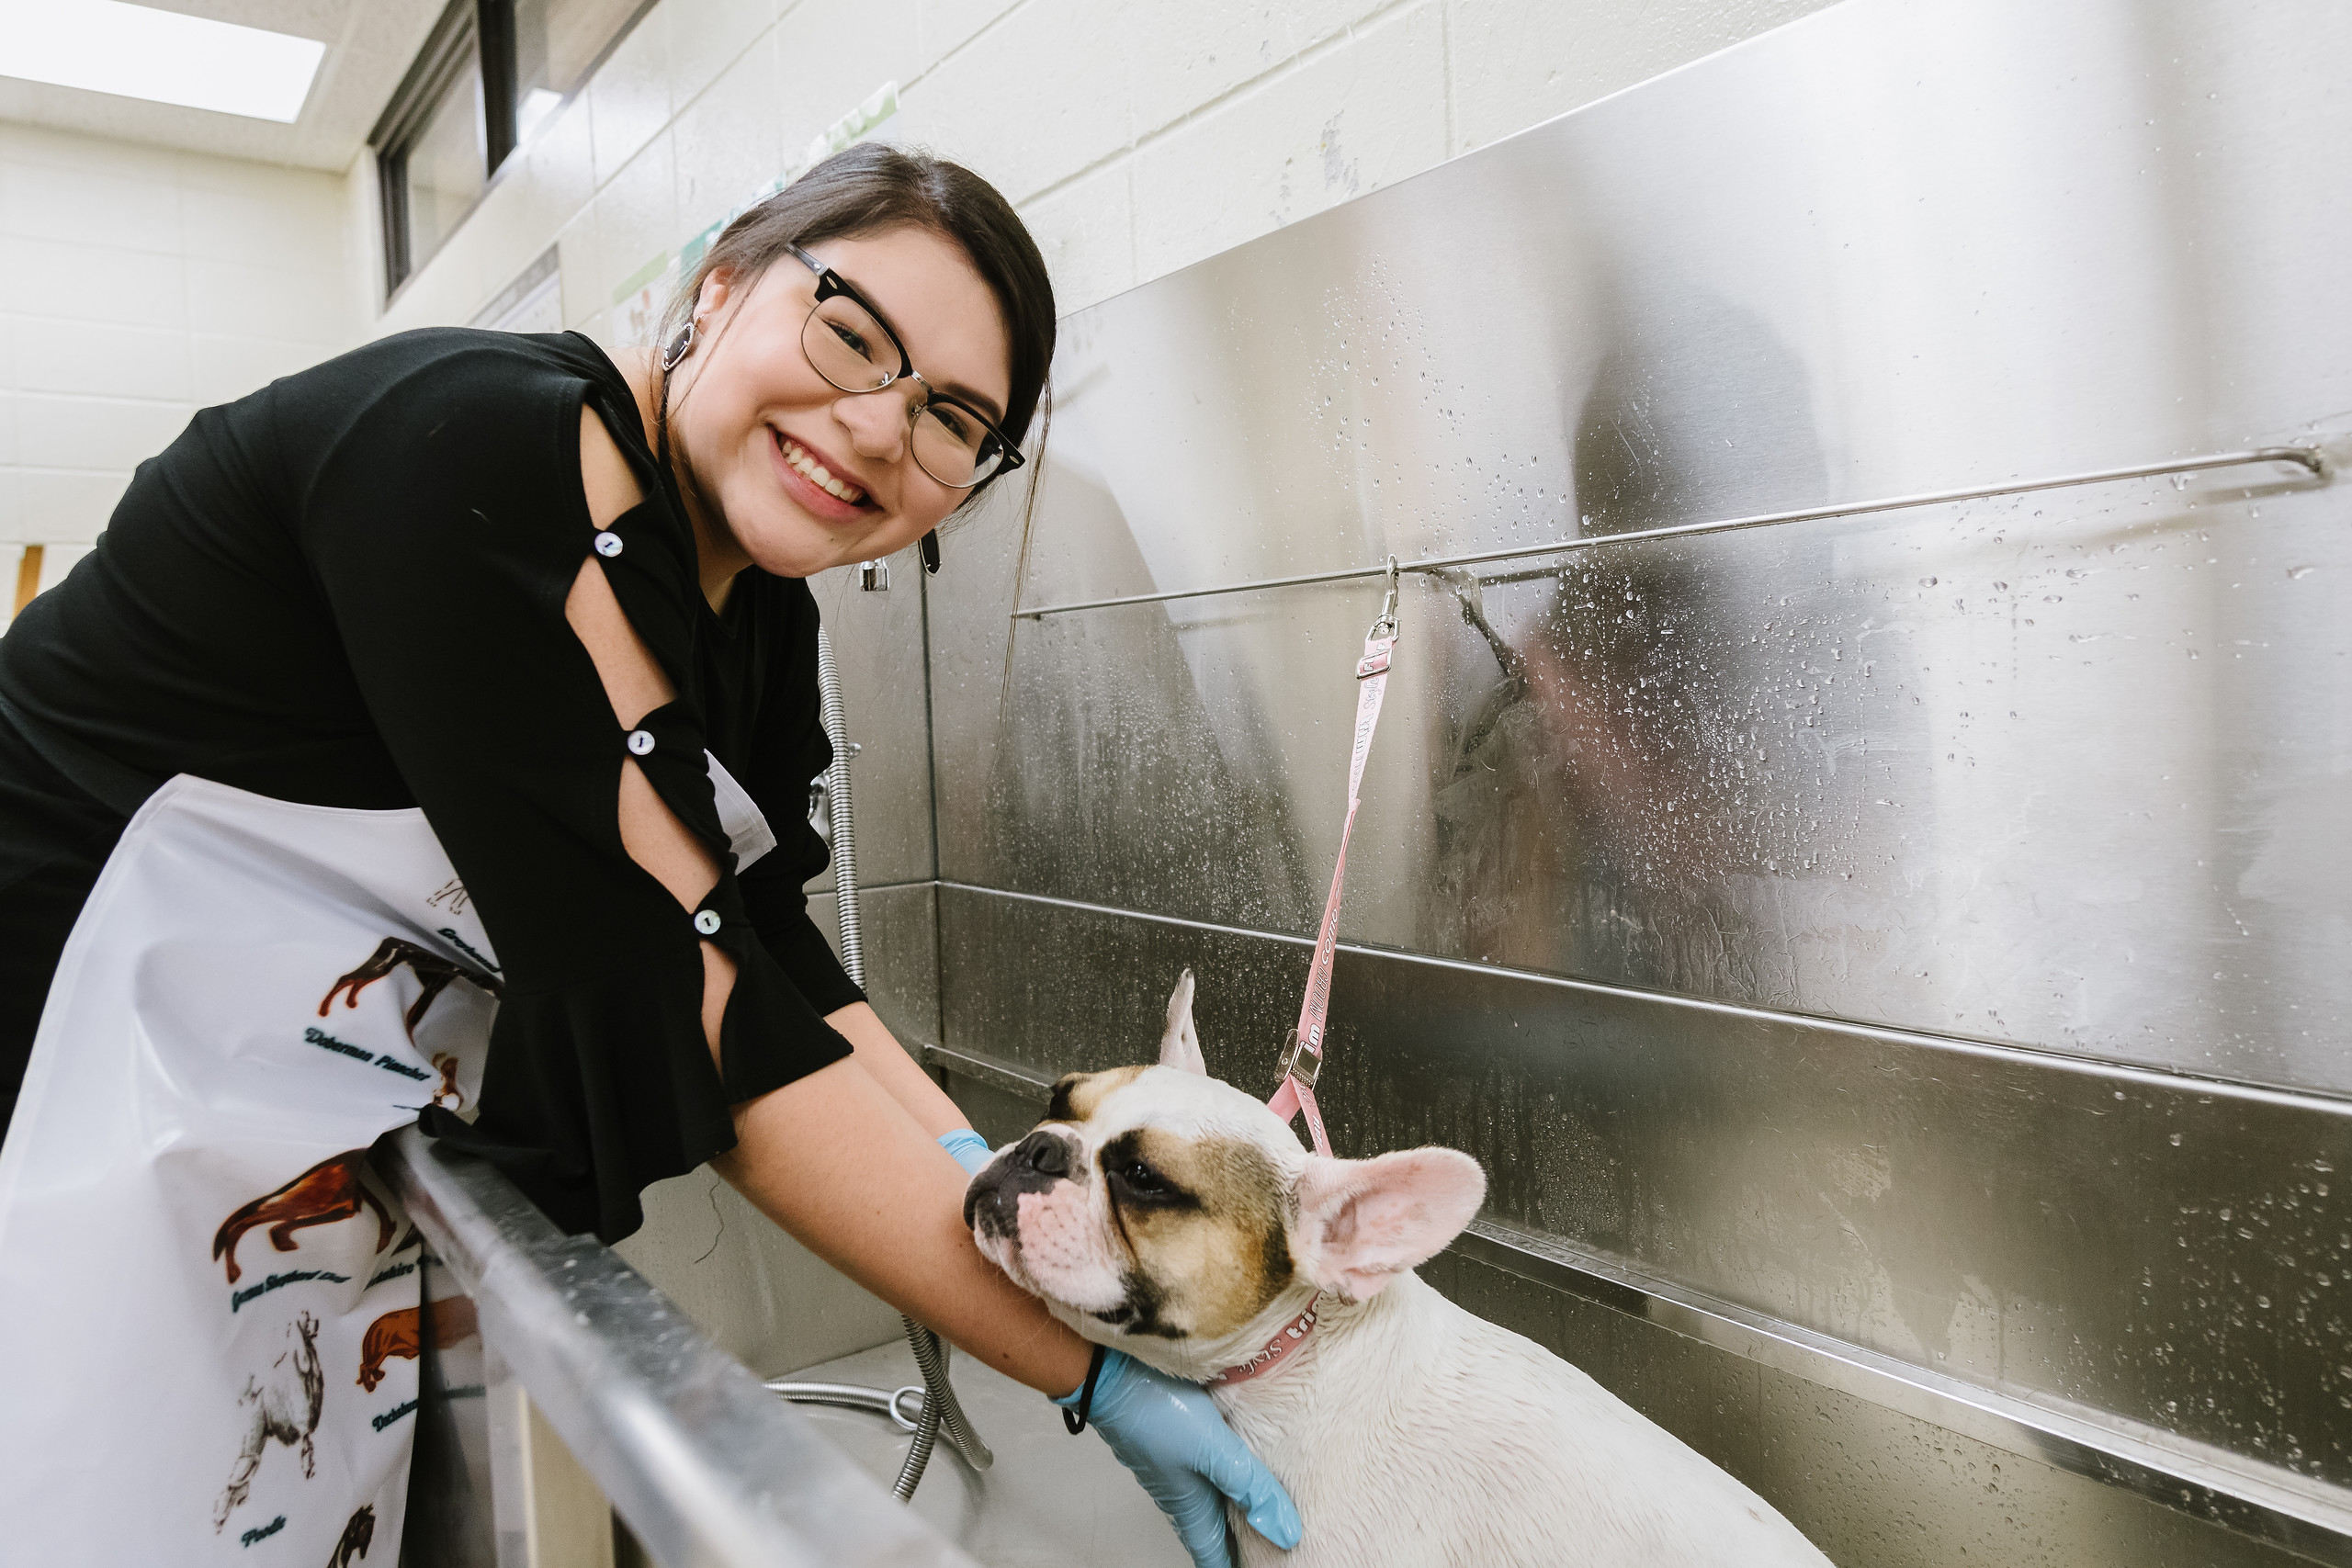 Pampered Pooches ofrecerá aprendizaje práctico para estudiantes de especialización en veterinaria.